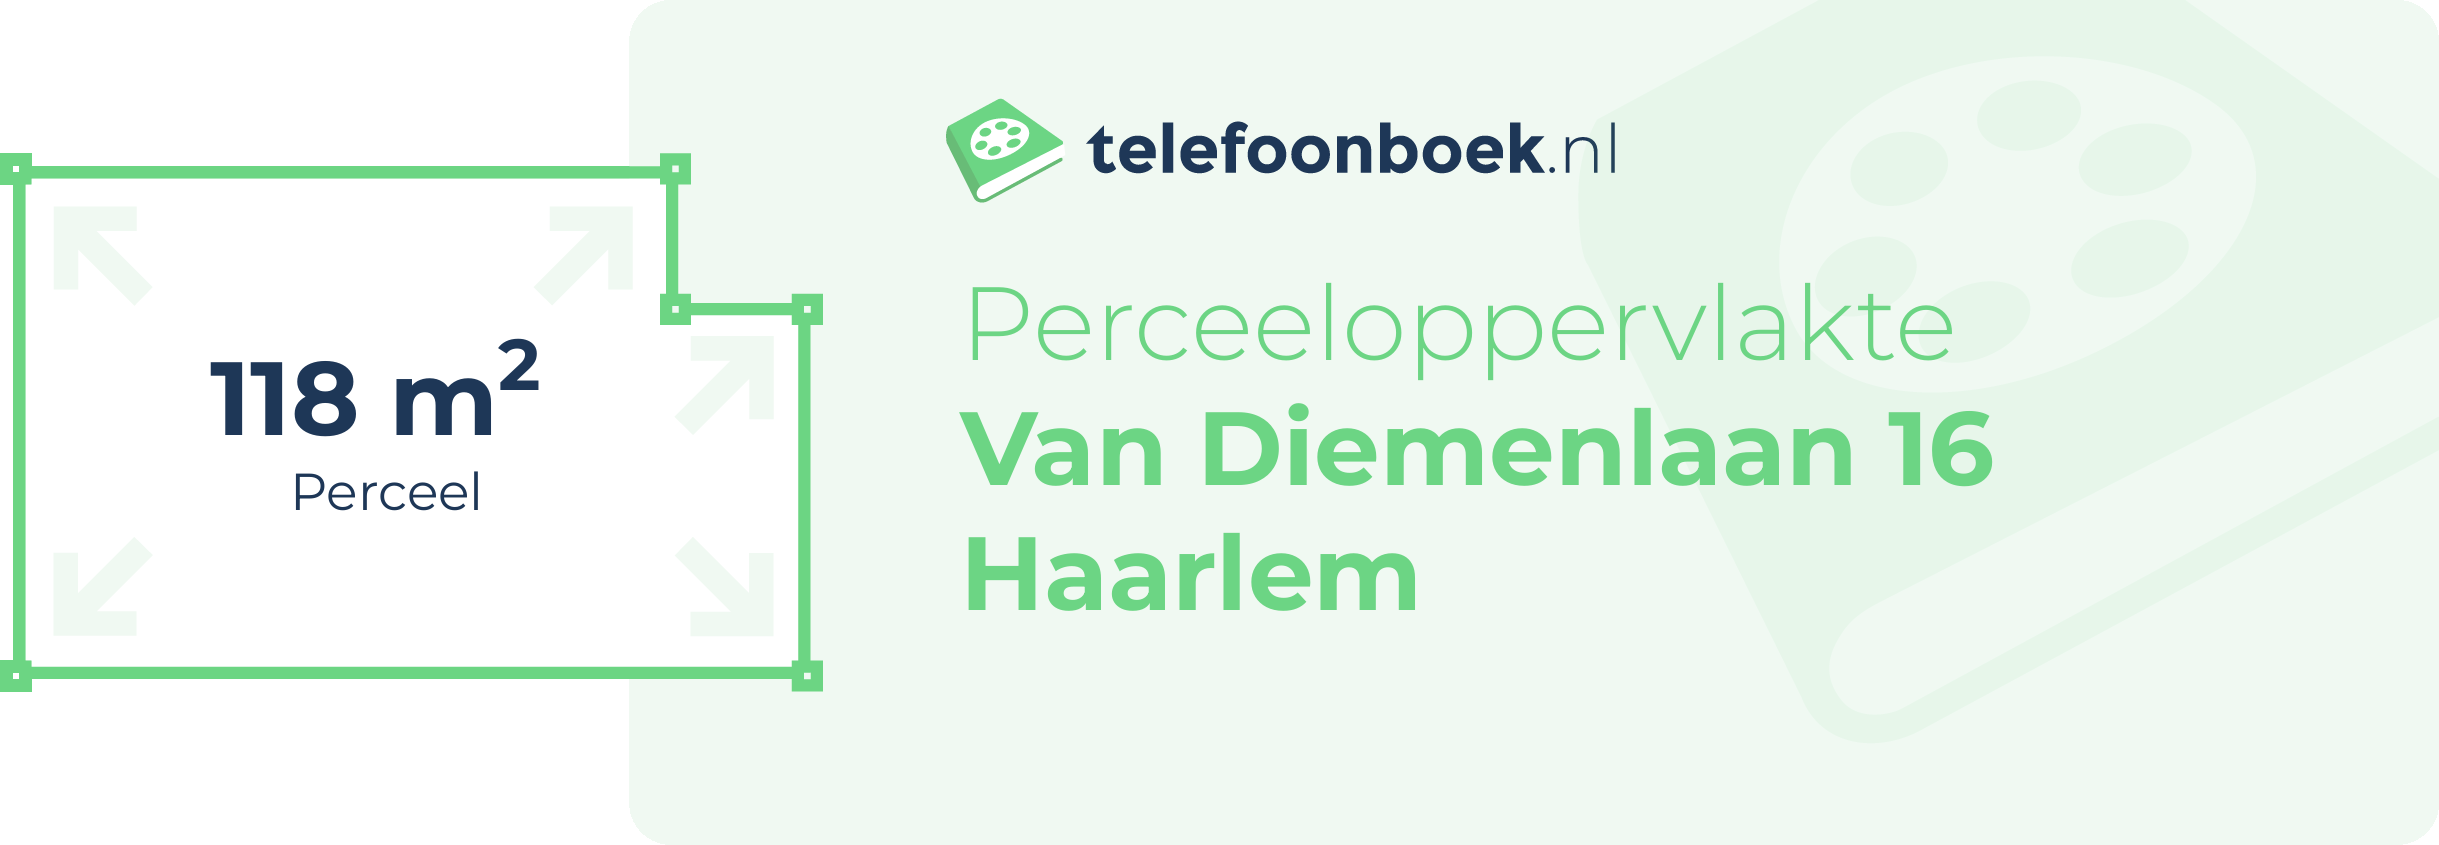 Perceeloppervlakte Van Diemenlaan 16 Haarlem